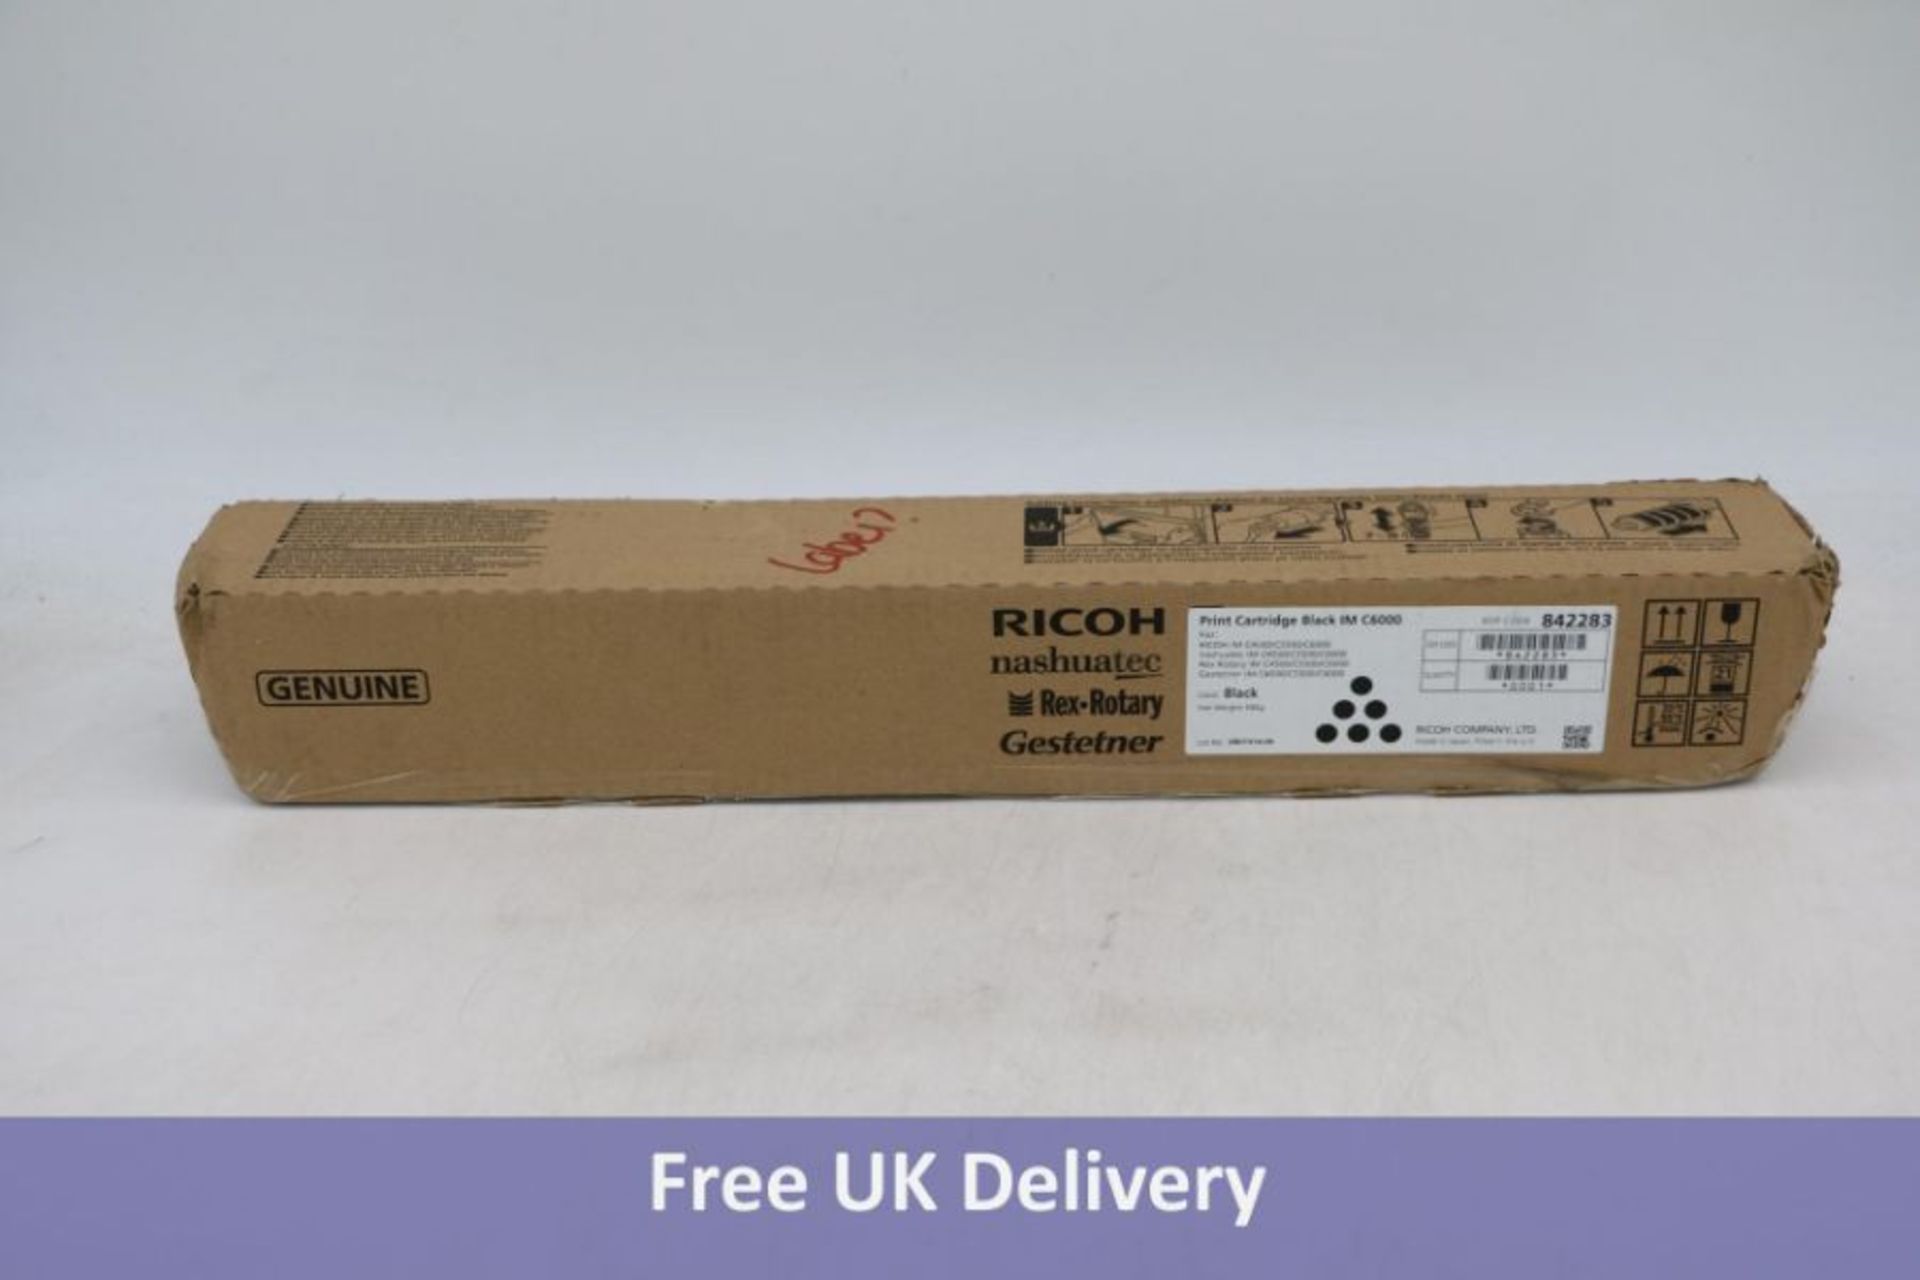 Ricoh 842283, Toner Cartridge Black, IM C4500, C5500, C6000- Original